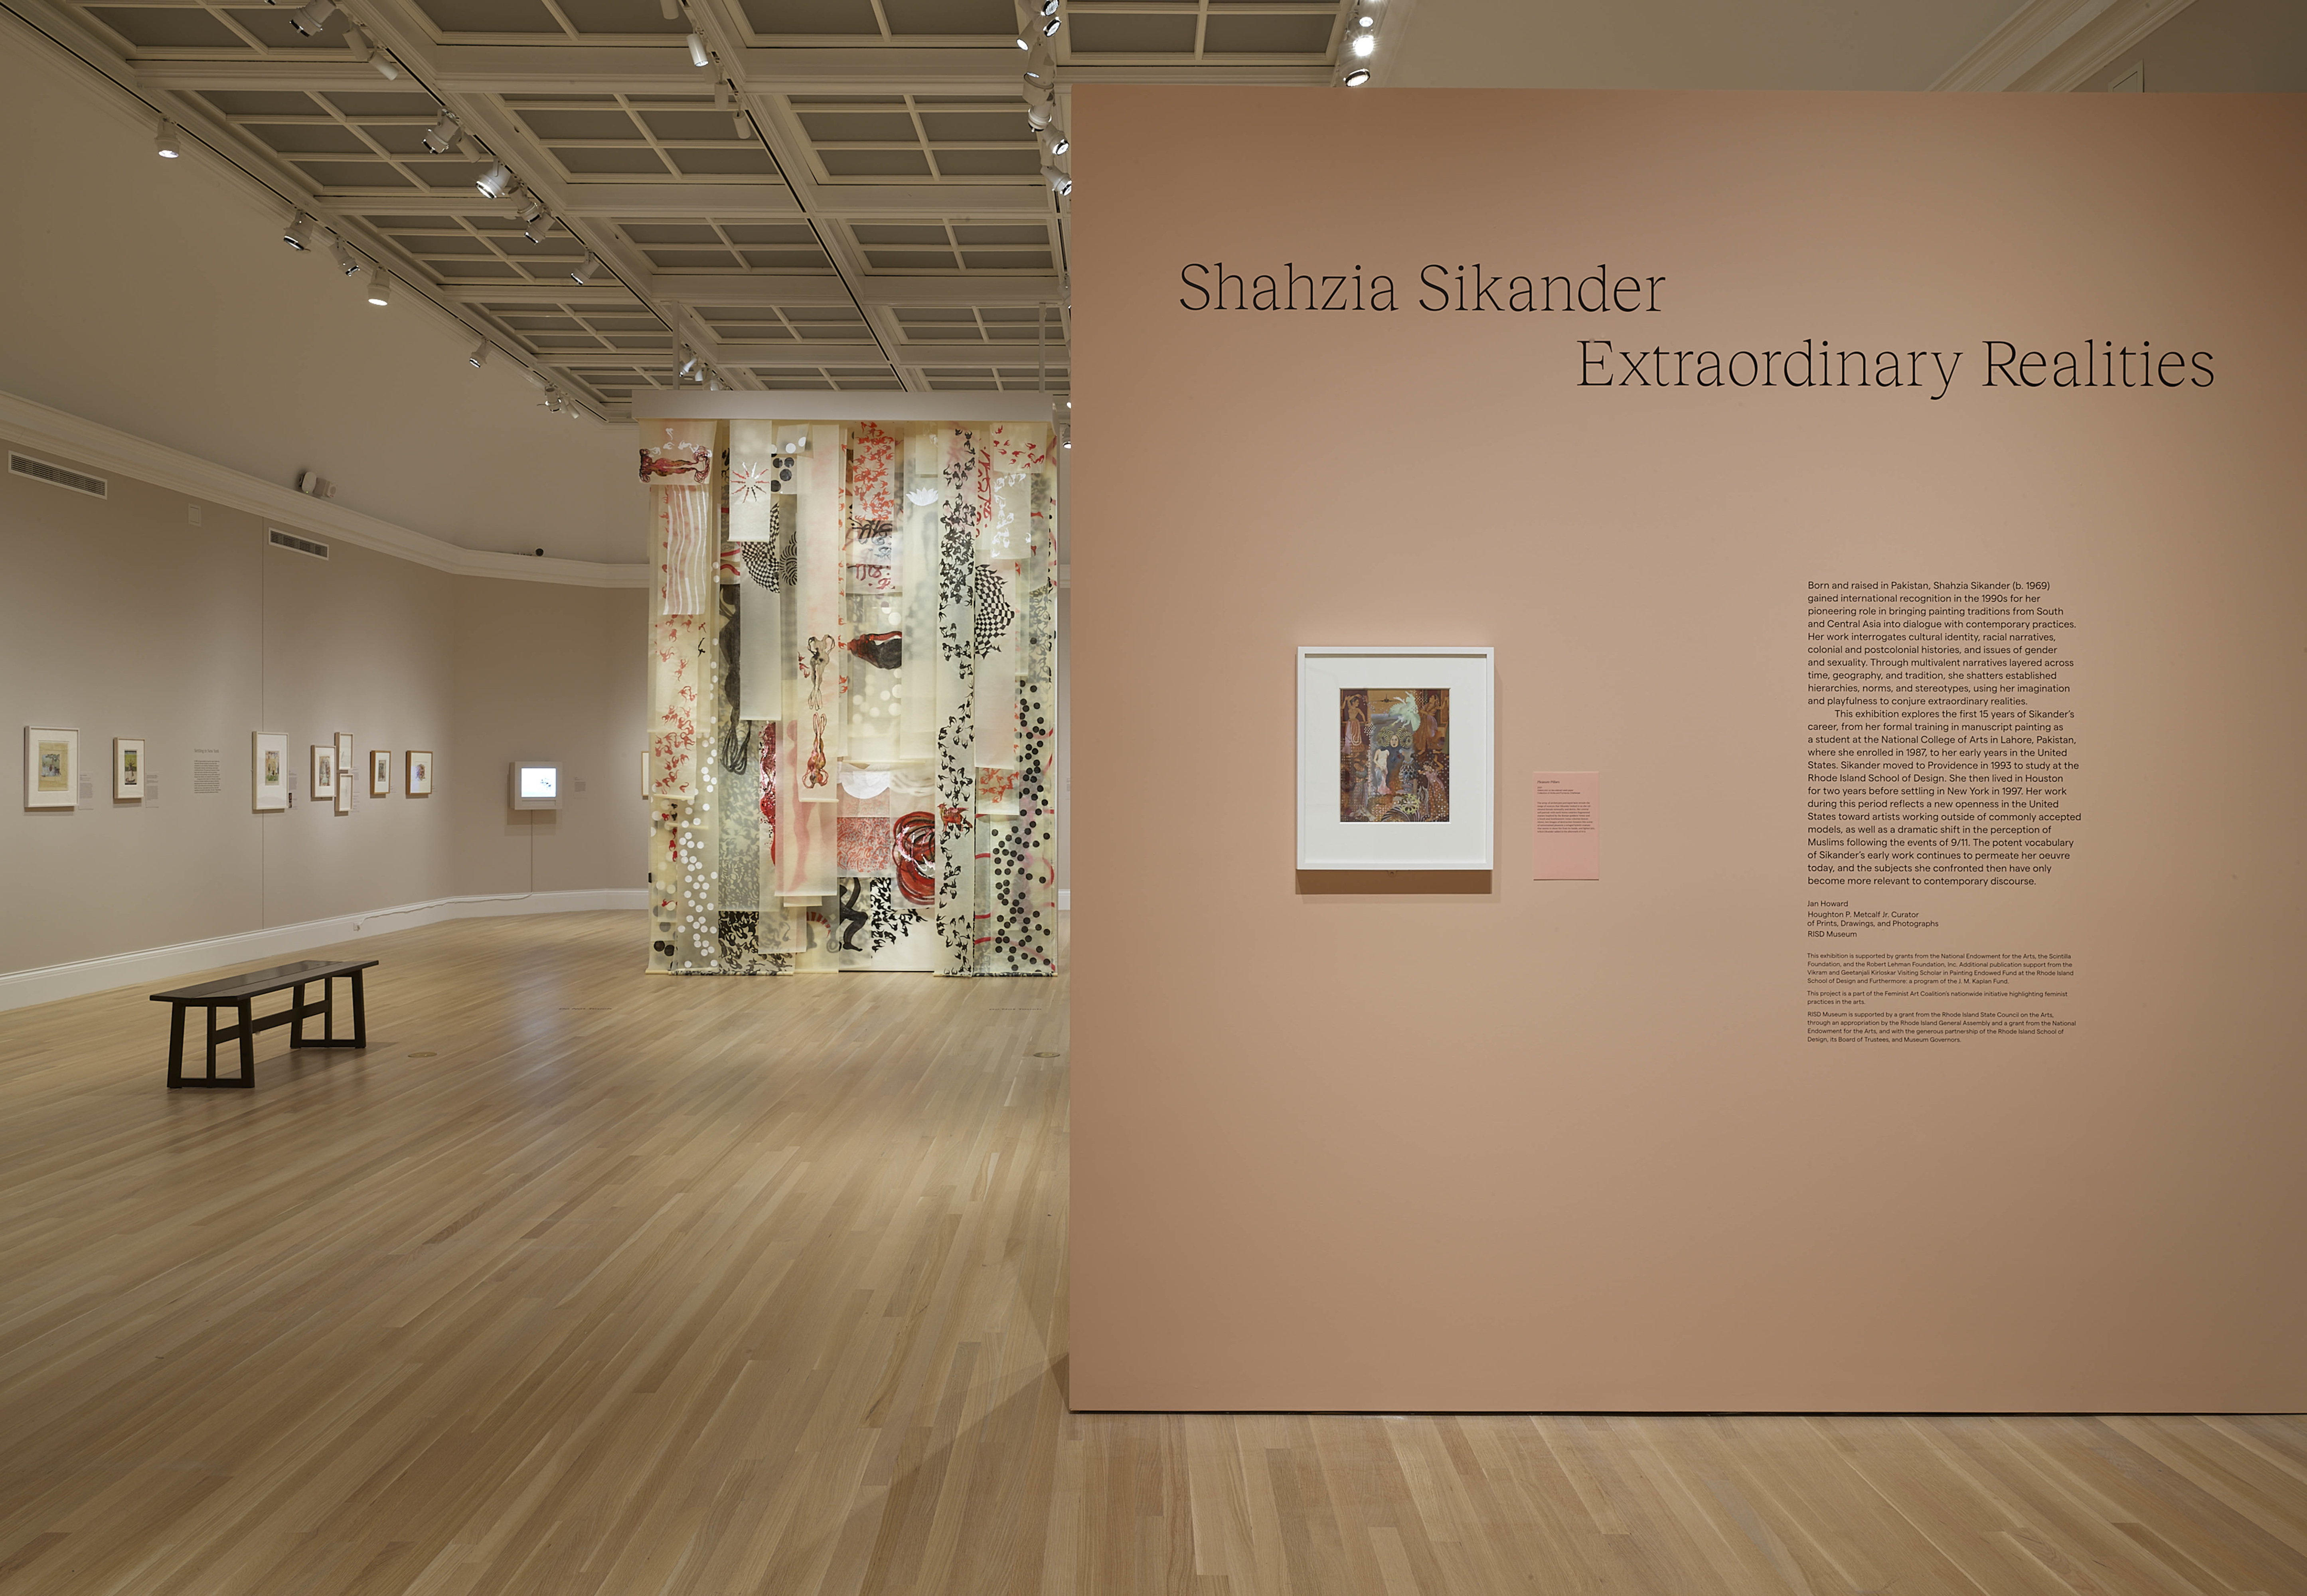 Shahzia Sikander Extraordinary Realities